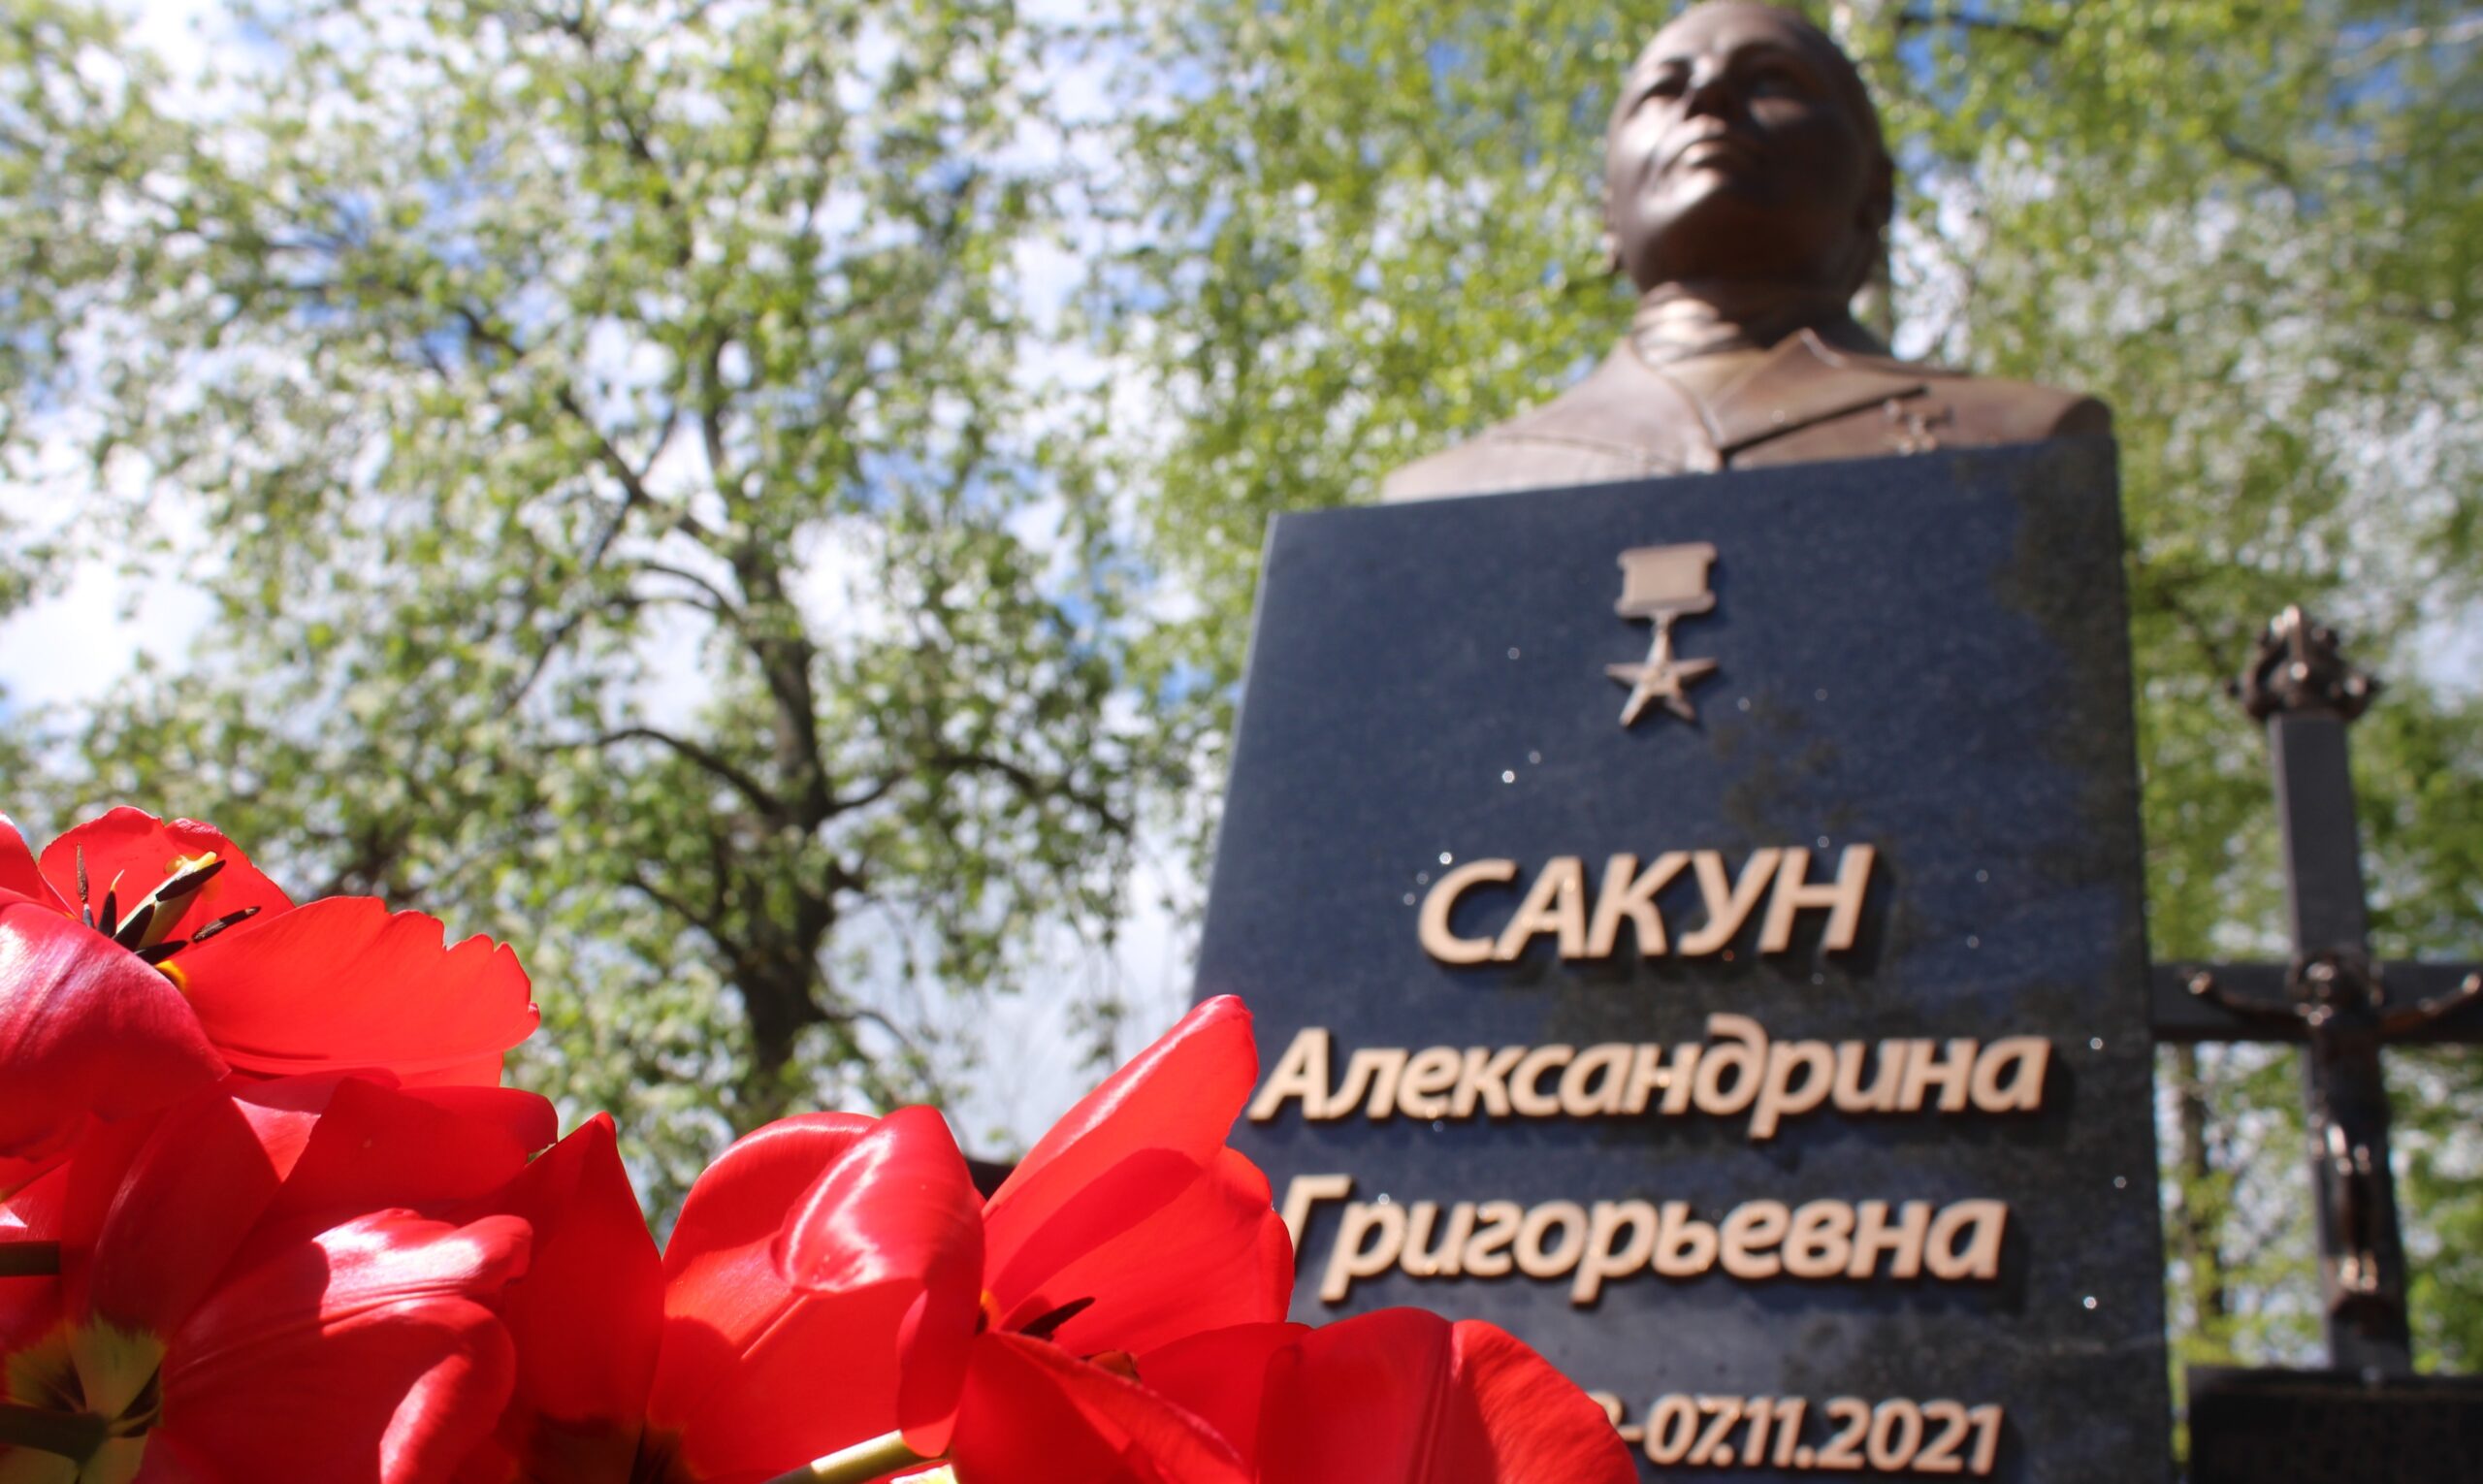 Сегодня в Бобруйском районе открыли памятник Герою Соцтруда Александрине Сакун